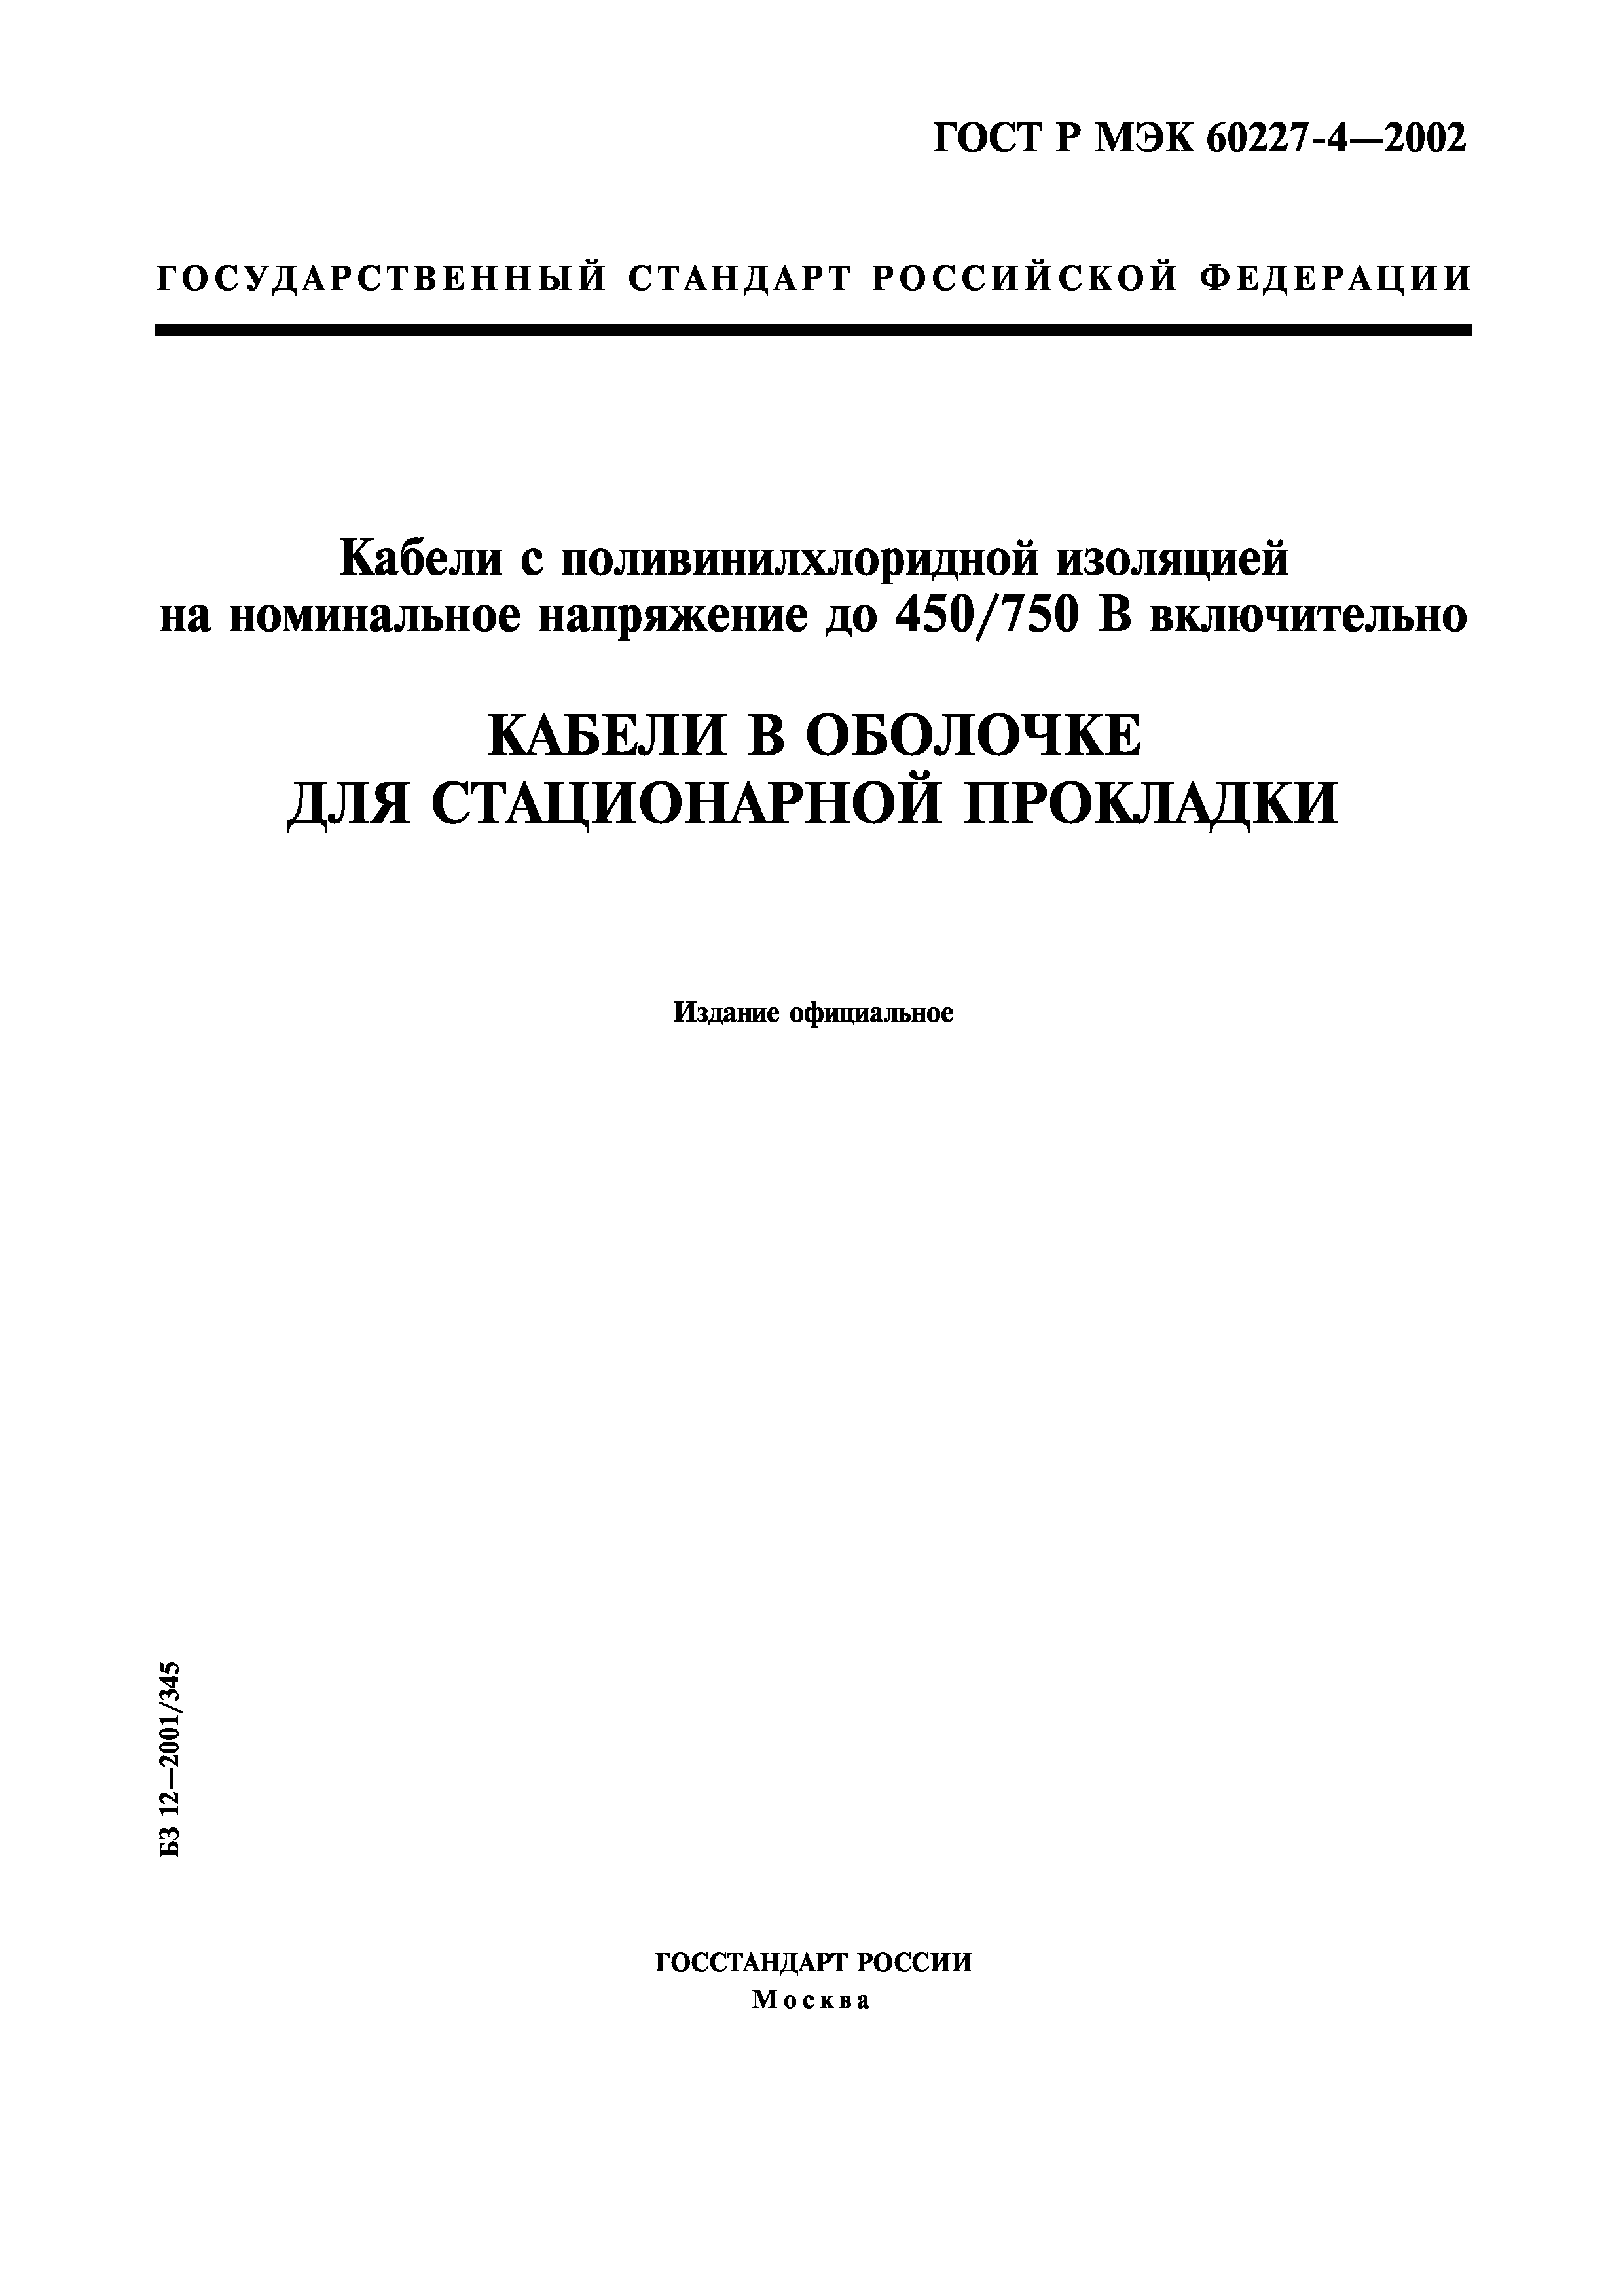 ГОСТ Р МЭК 60227-4-2002